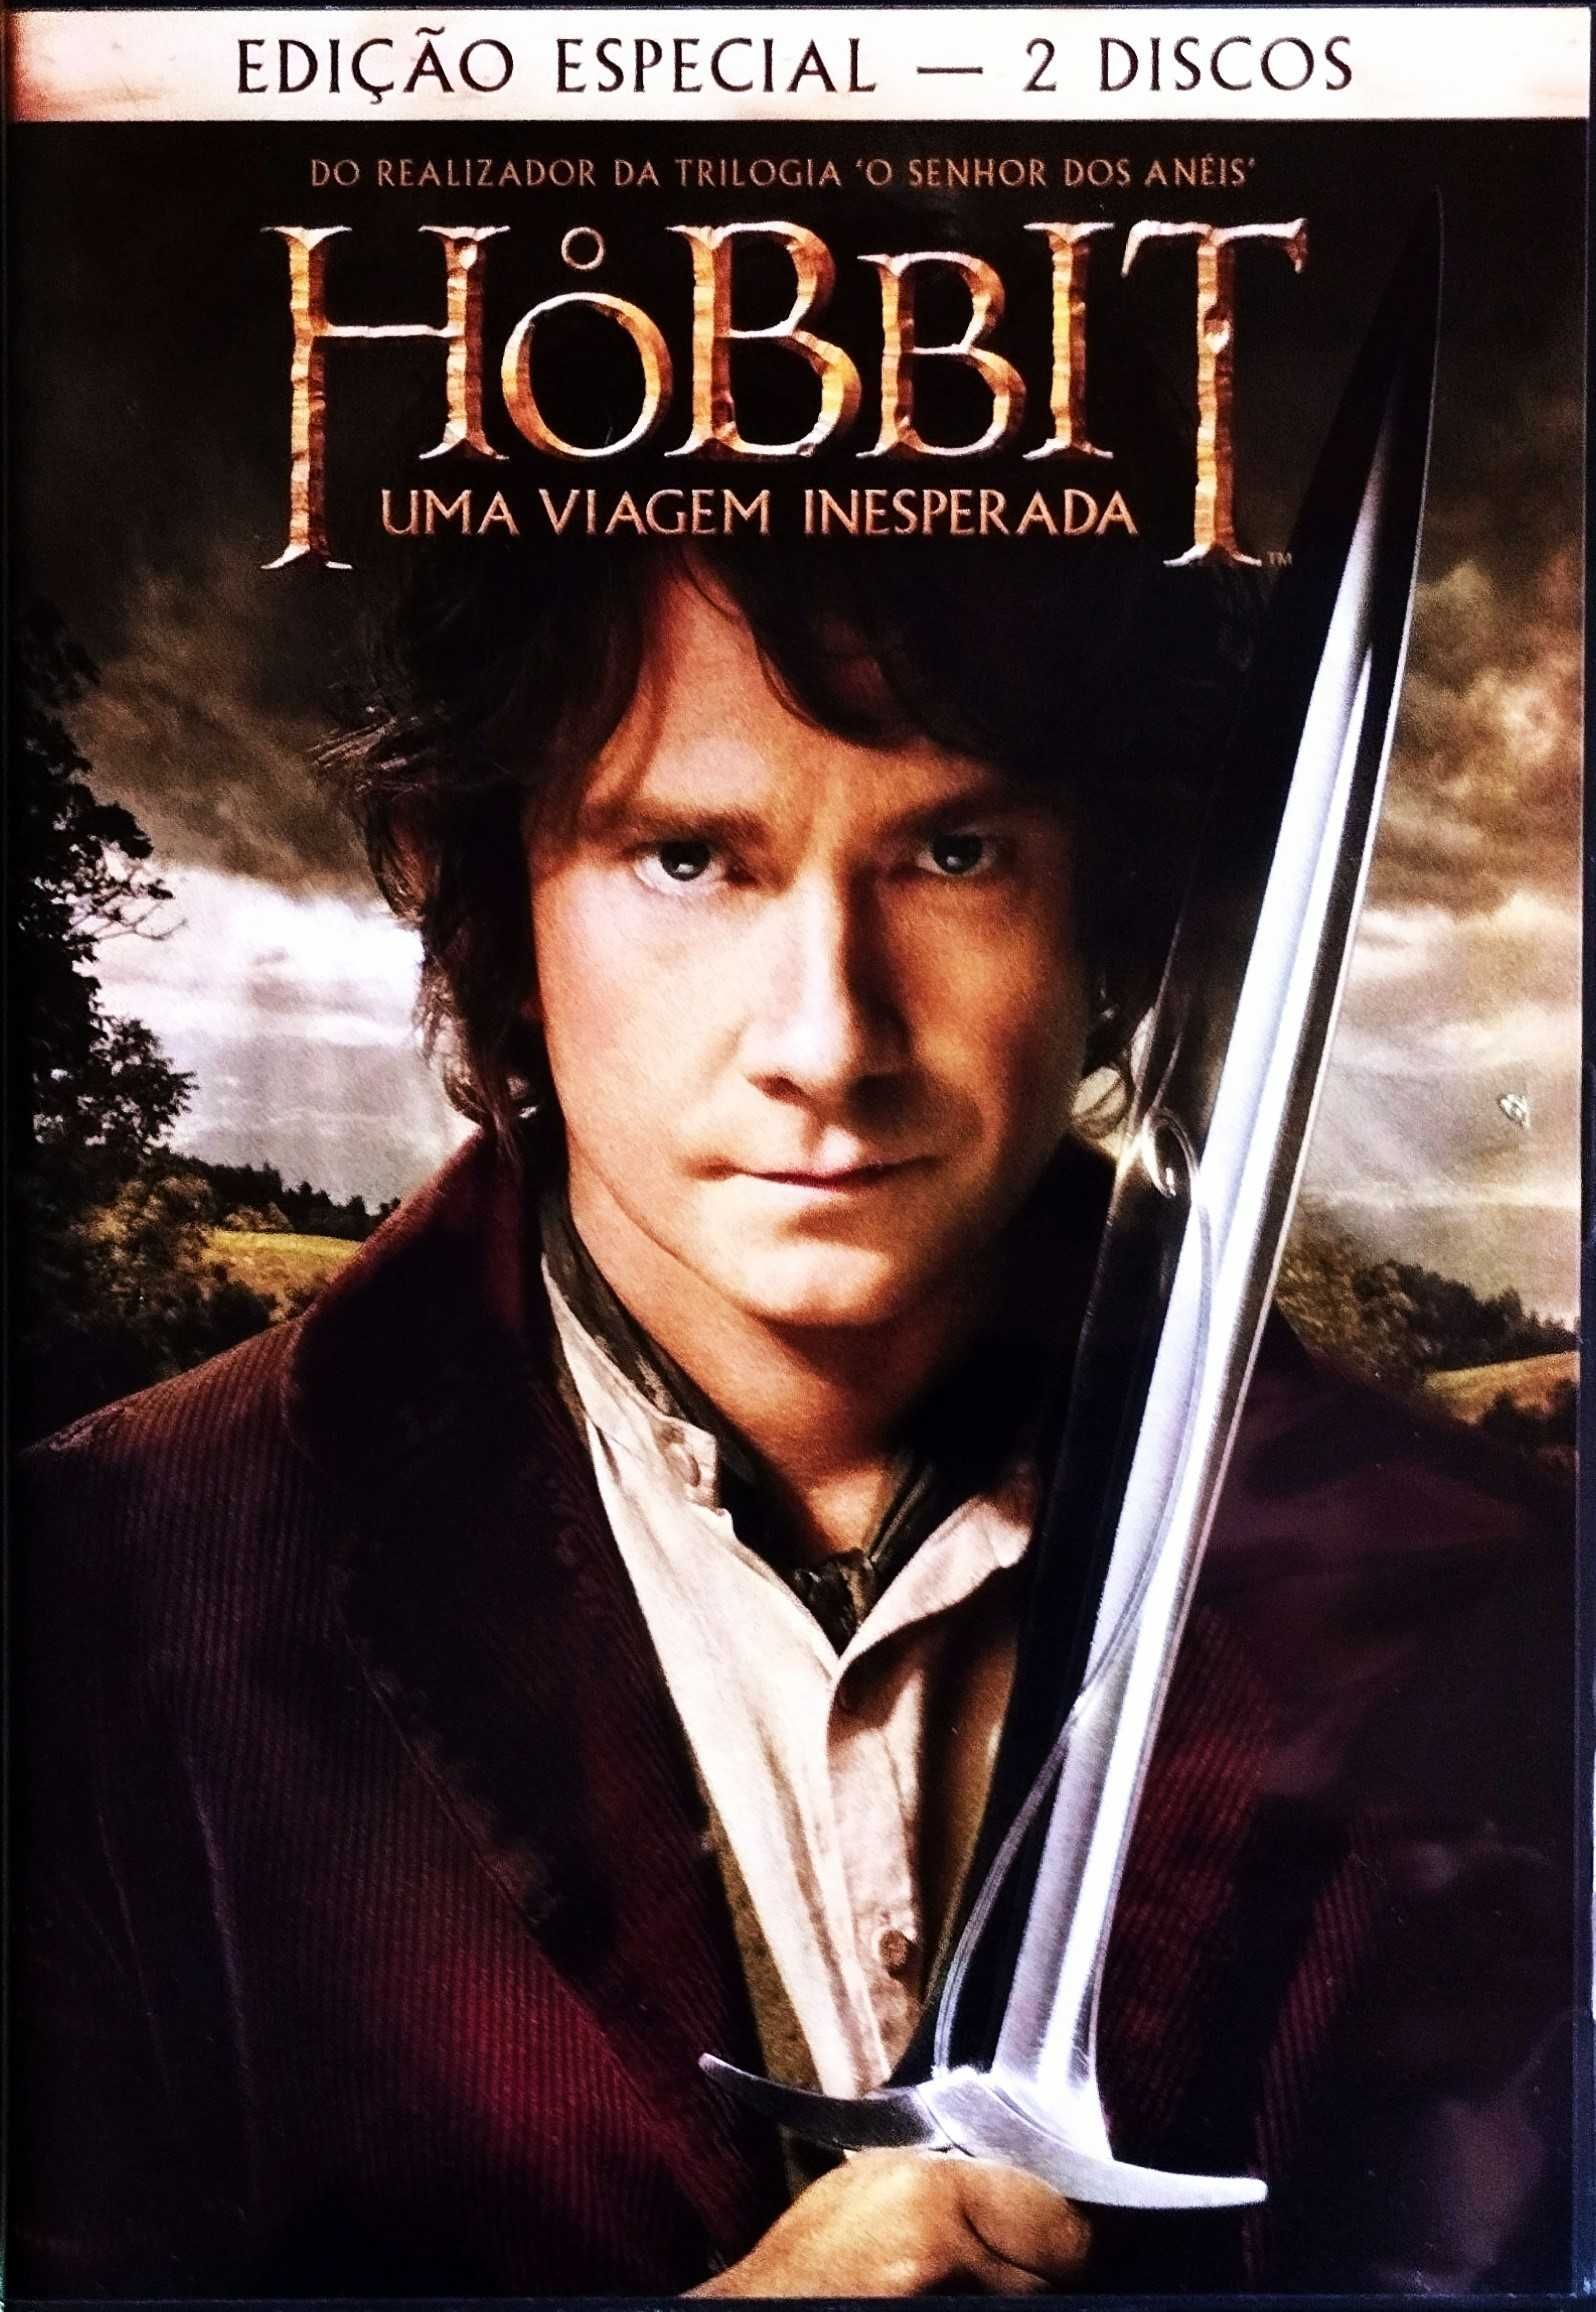 Filmes Especiais - O Hobbit - Uma Viagem Inesperada (Edição Especial)